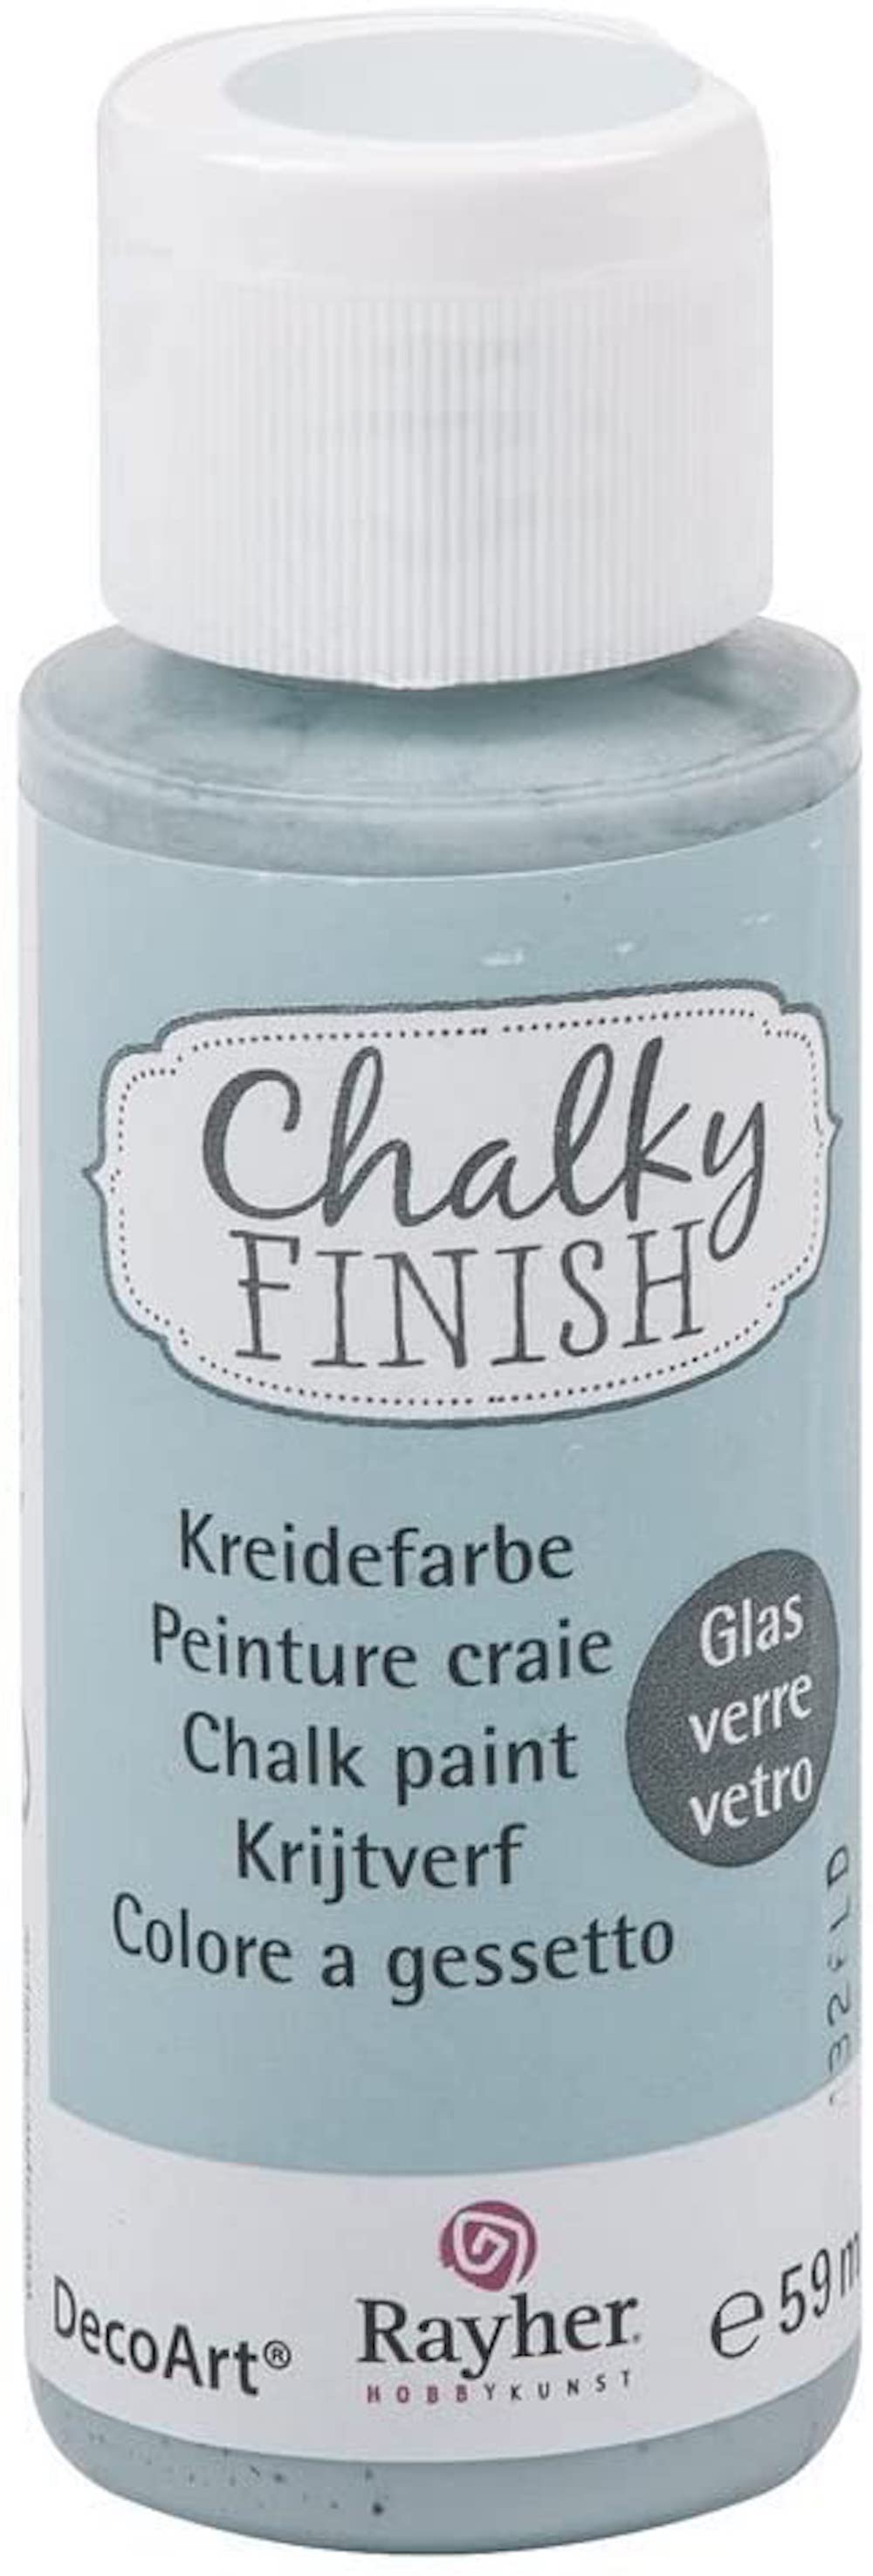 Chalky Finish, Kreidefarbe, 59ml, blaugrau